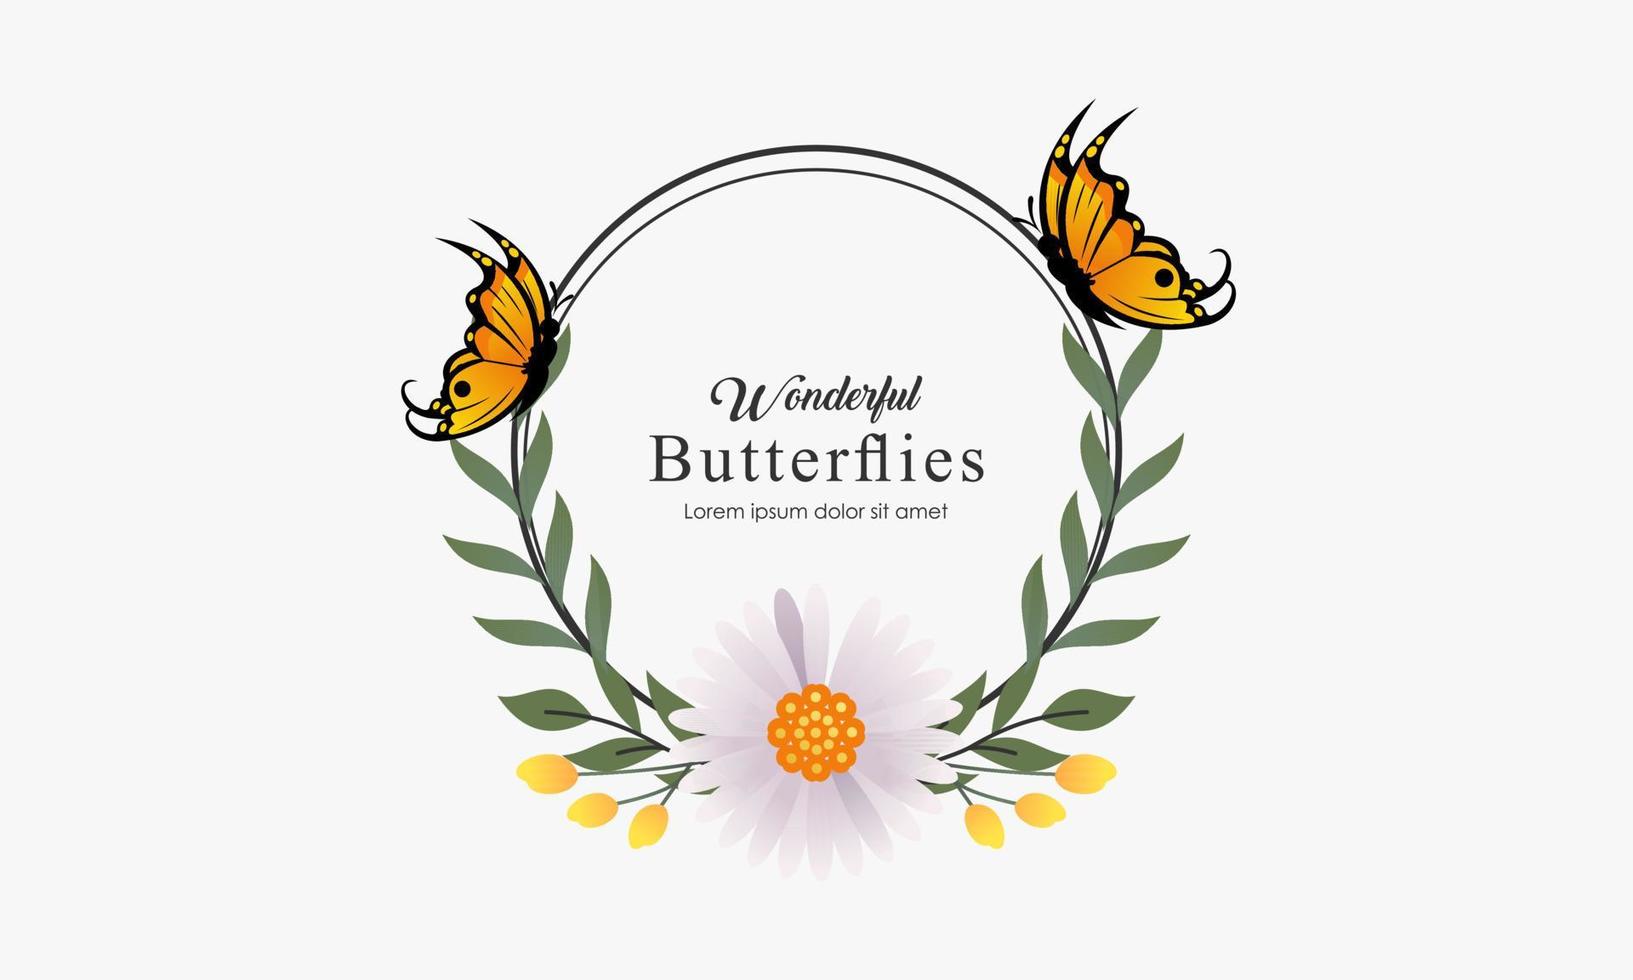 plantilla de corona y logotipo de mariposa en estilo acuarela vector